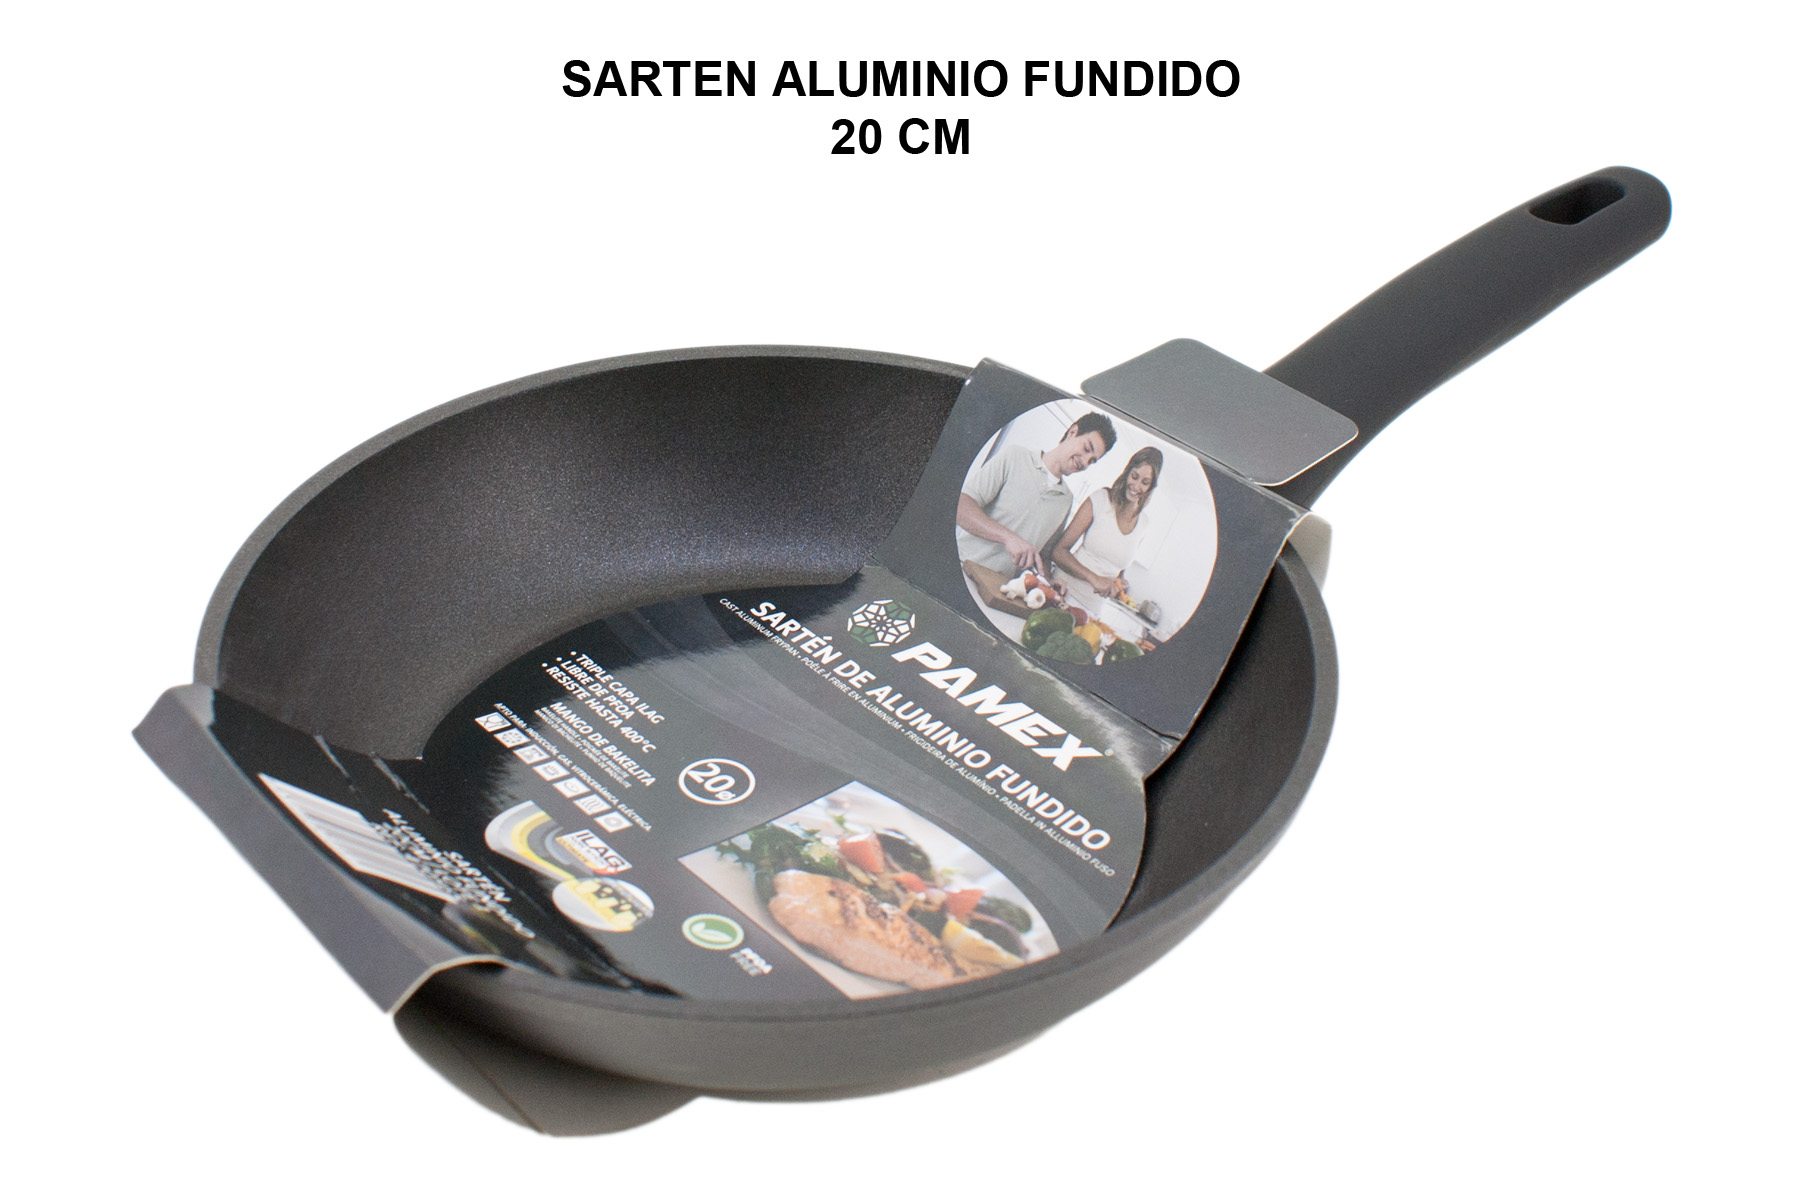 SARTEN ALUMINIO FUNDIDO FULL INDUCTION 20 CM